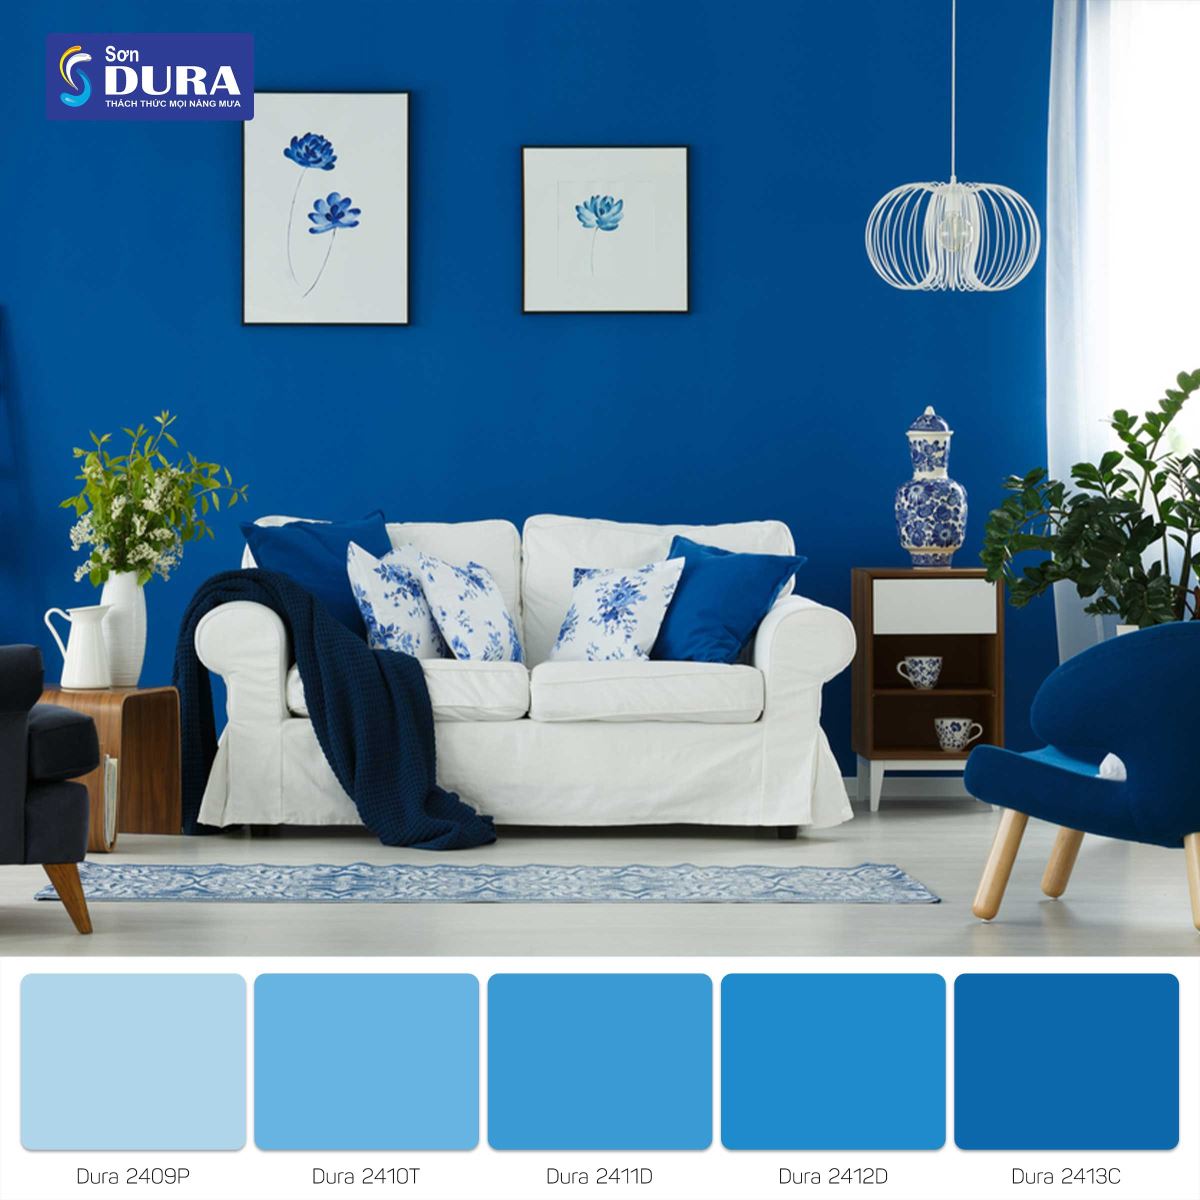 Màu xanh dương đậm kết hợp cùng nội thất trắng luôn tạo nên điểm nhấn đặc biệt cho căn phòng của bạn